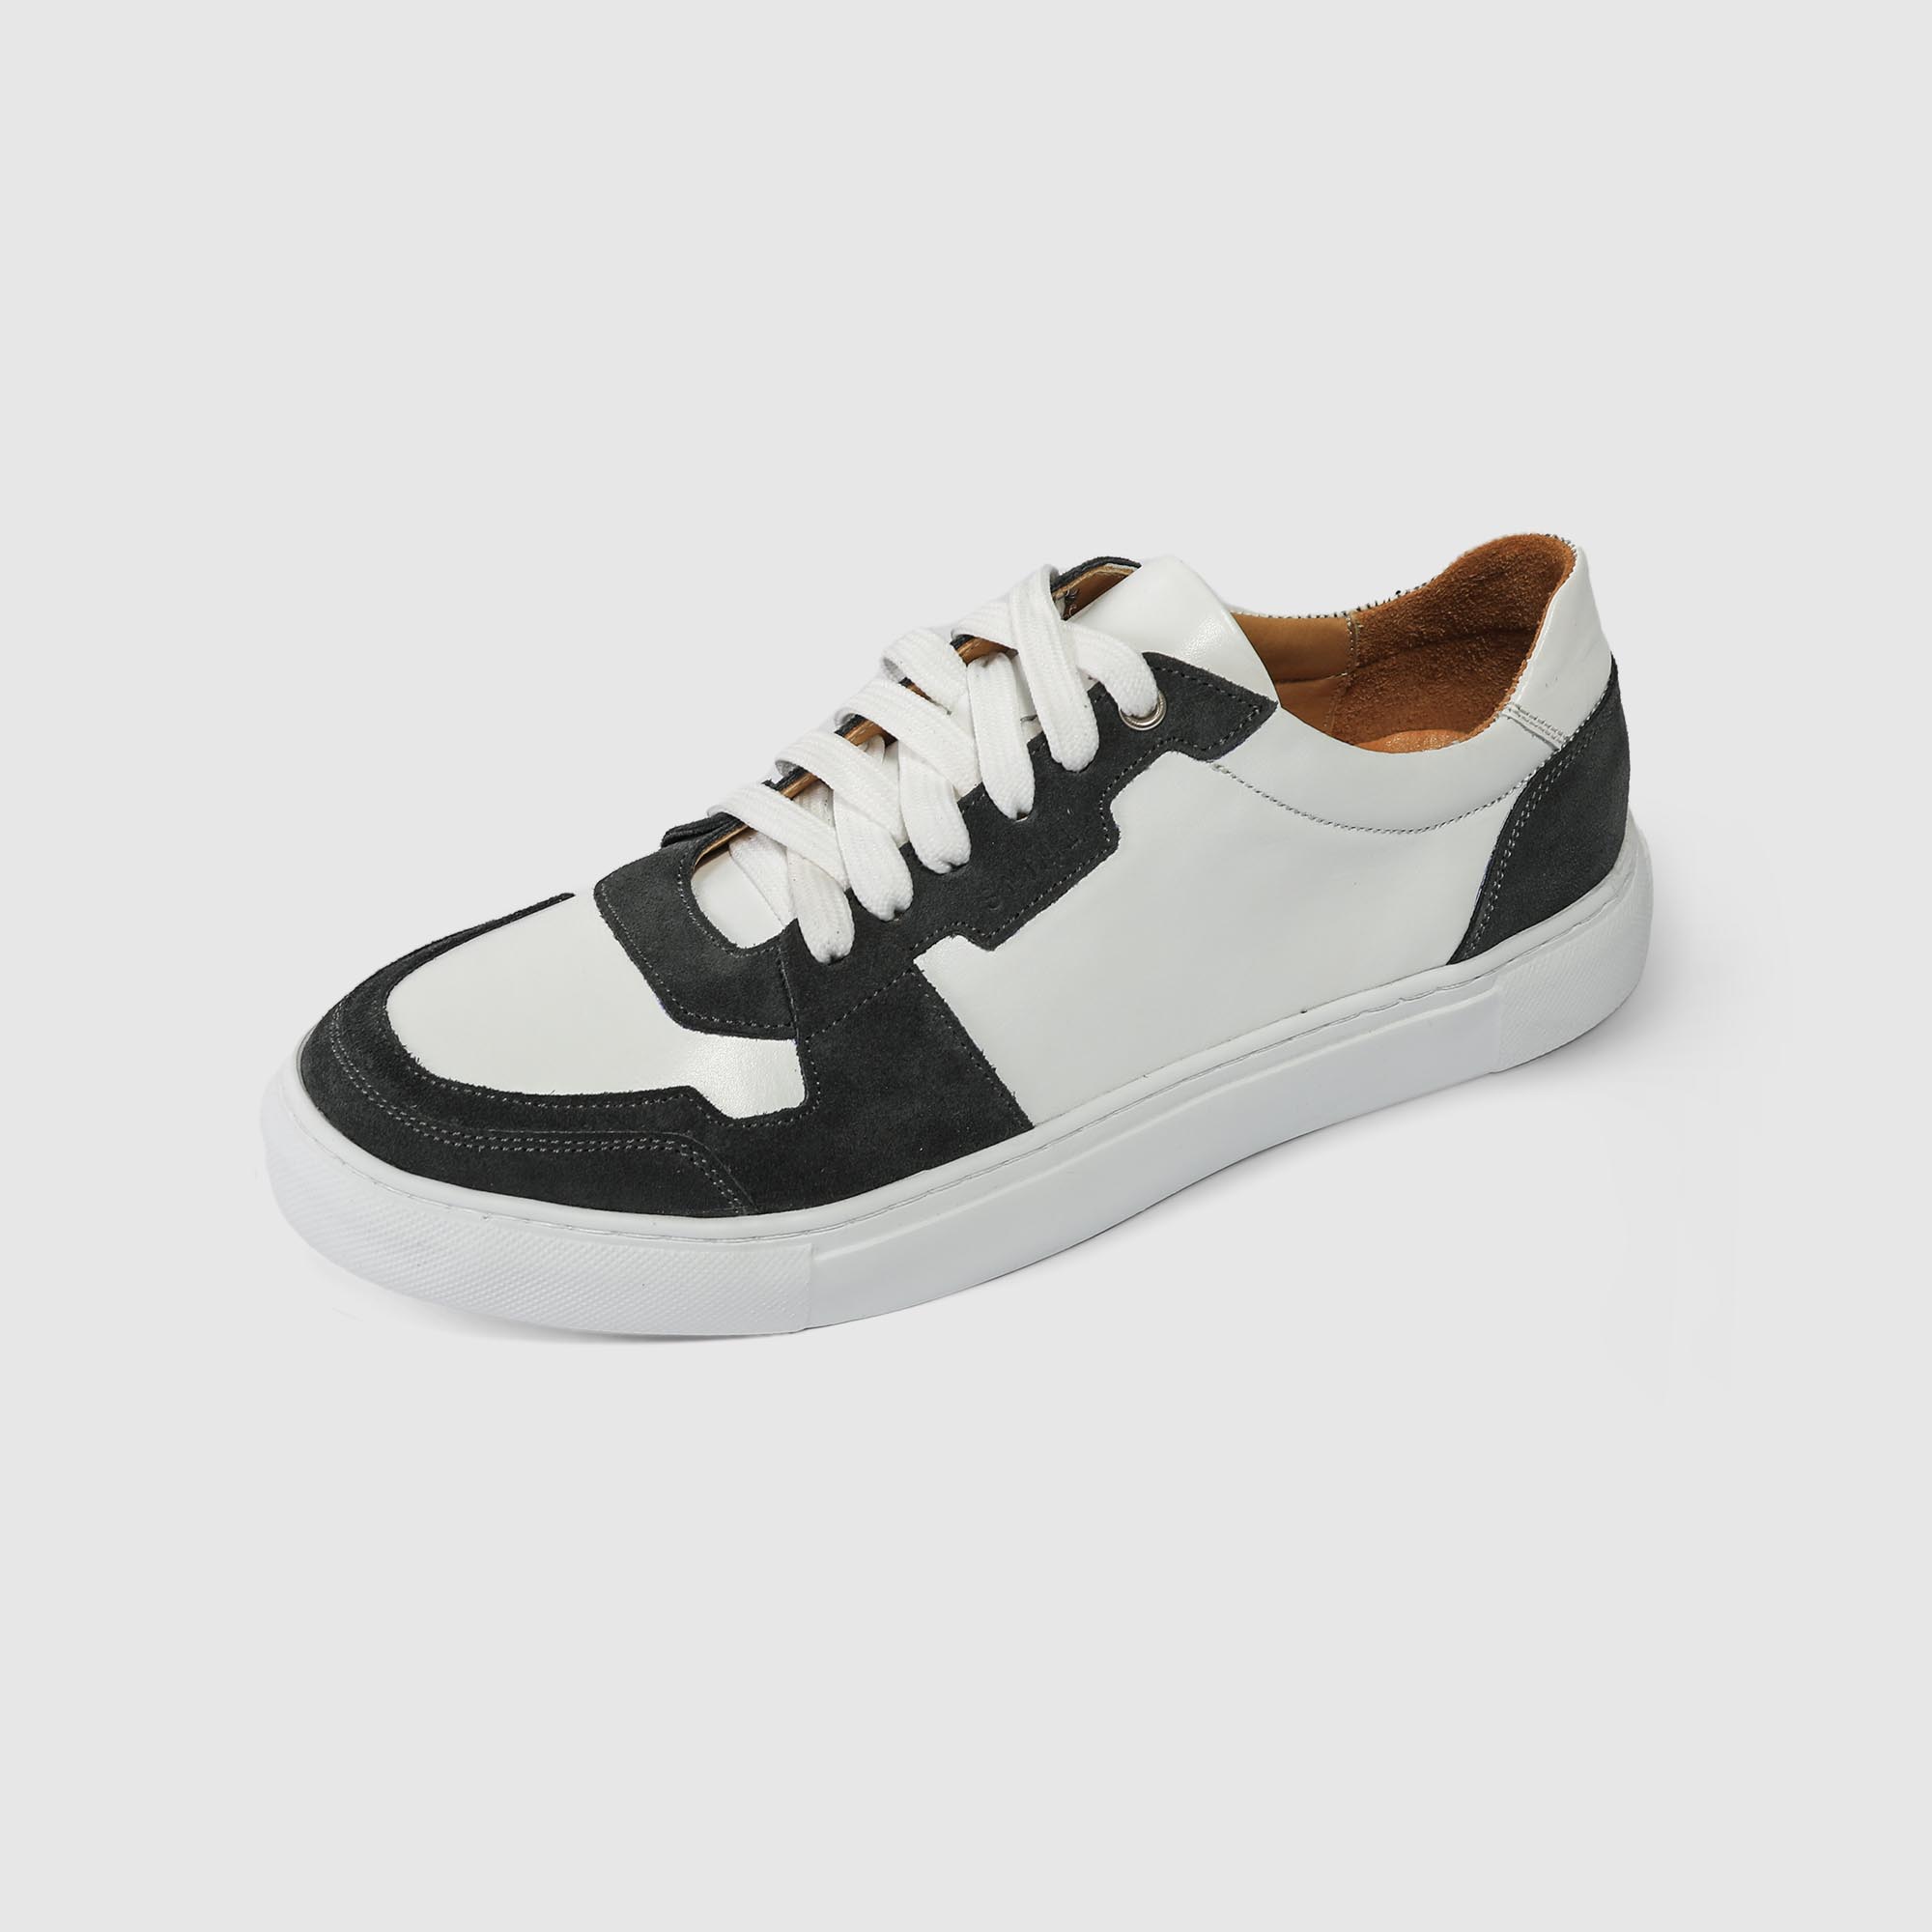 Мужские кроссовки Twins Shoes белые с тёмно-серым, цвет белый, размер 41